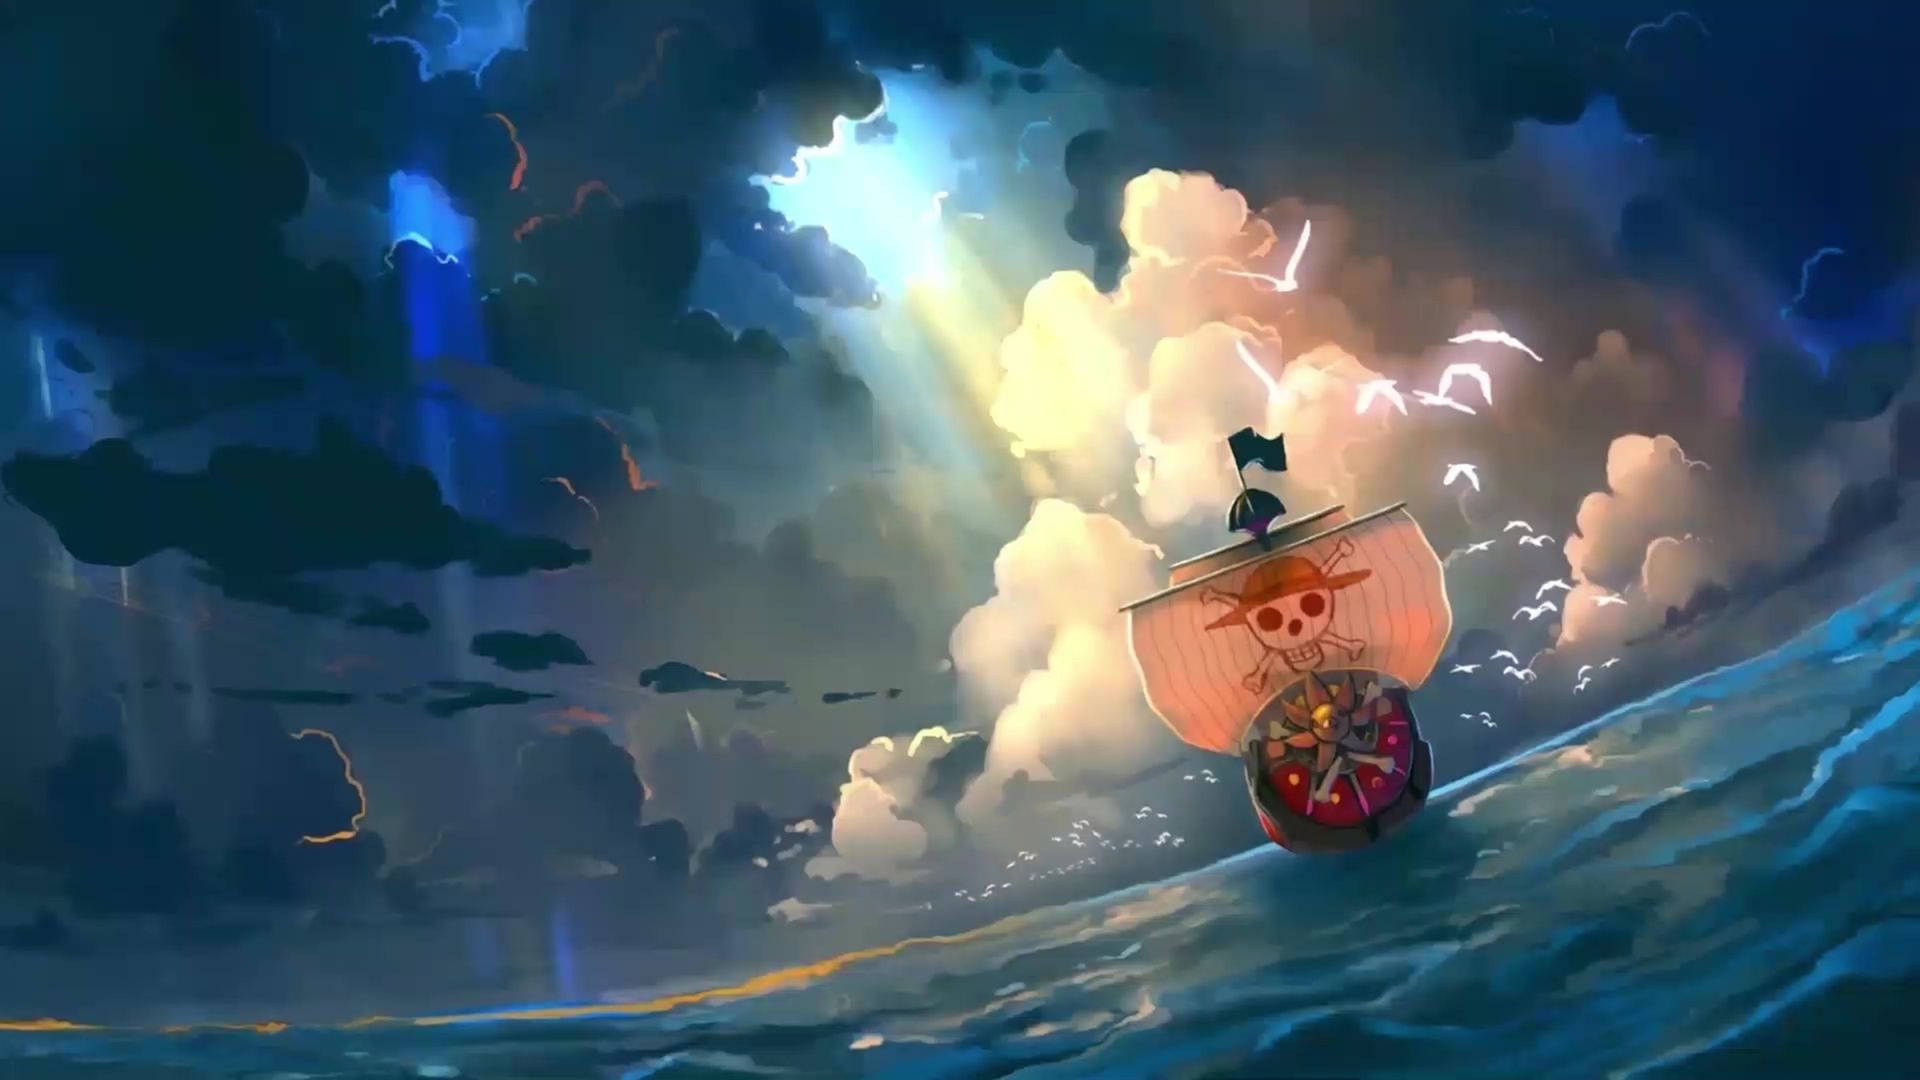 Thousand Sunny One Piece Wano Wallpaper - Chiếc tàu Thousand Sunny với sự kết hợp hài hòa giữa phong cách cổ truyền và hiện đại - một trong những kiệt tác của Eiichiro Oda. Hãy ngắm nhìn thiết kế sáng tạo và đầy màu sắc của chiếc tàu, hứa hẹn sẽ đưa bạn đến với các chuyến phiêu lưu thú vị cùng đội mũ rơm.